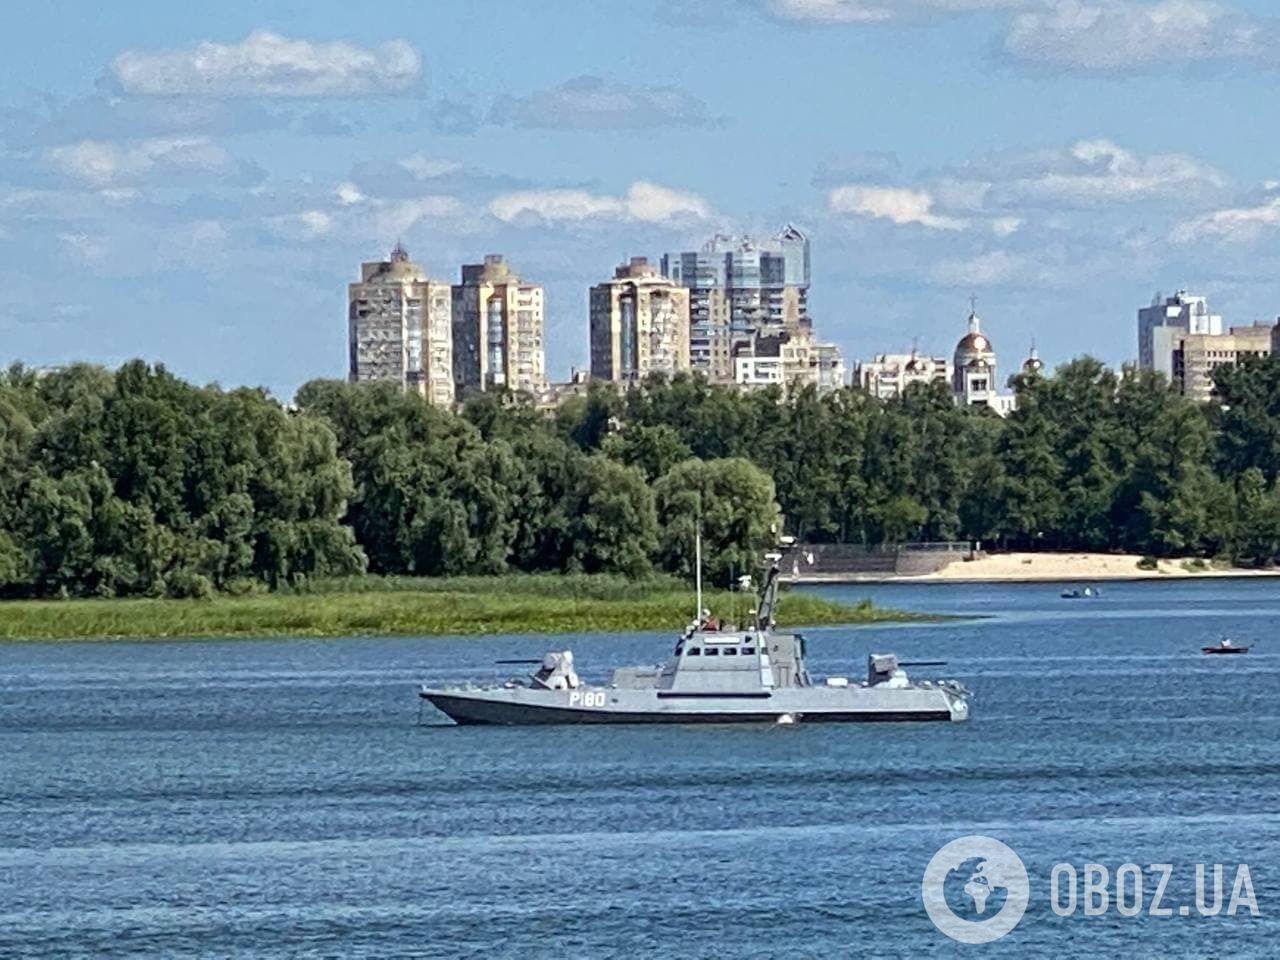 Всего возле Труханова острова увидели три катера.